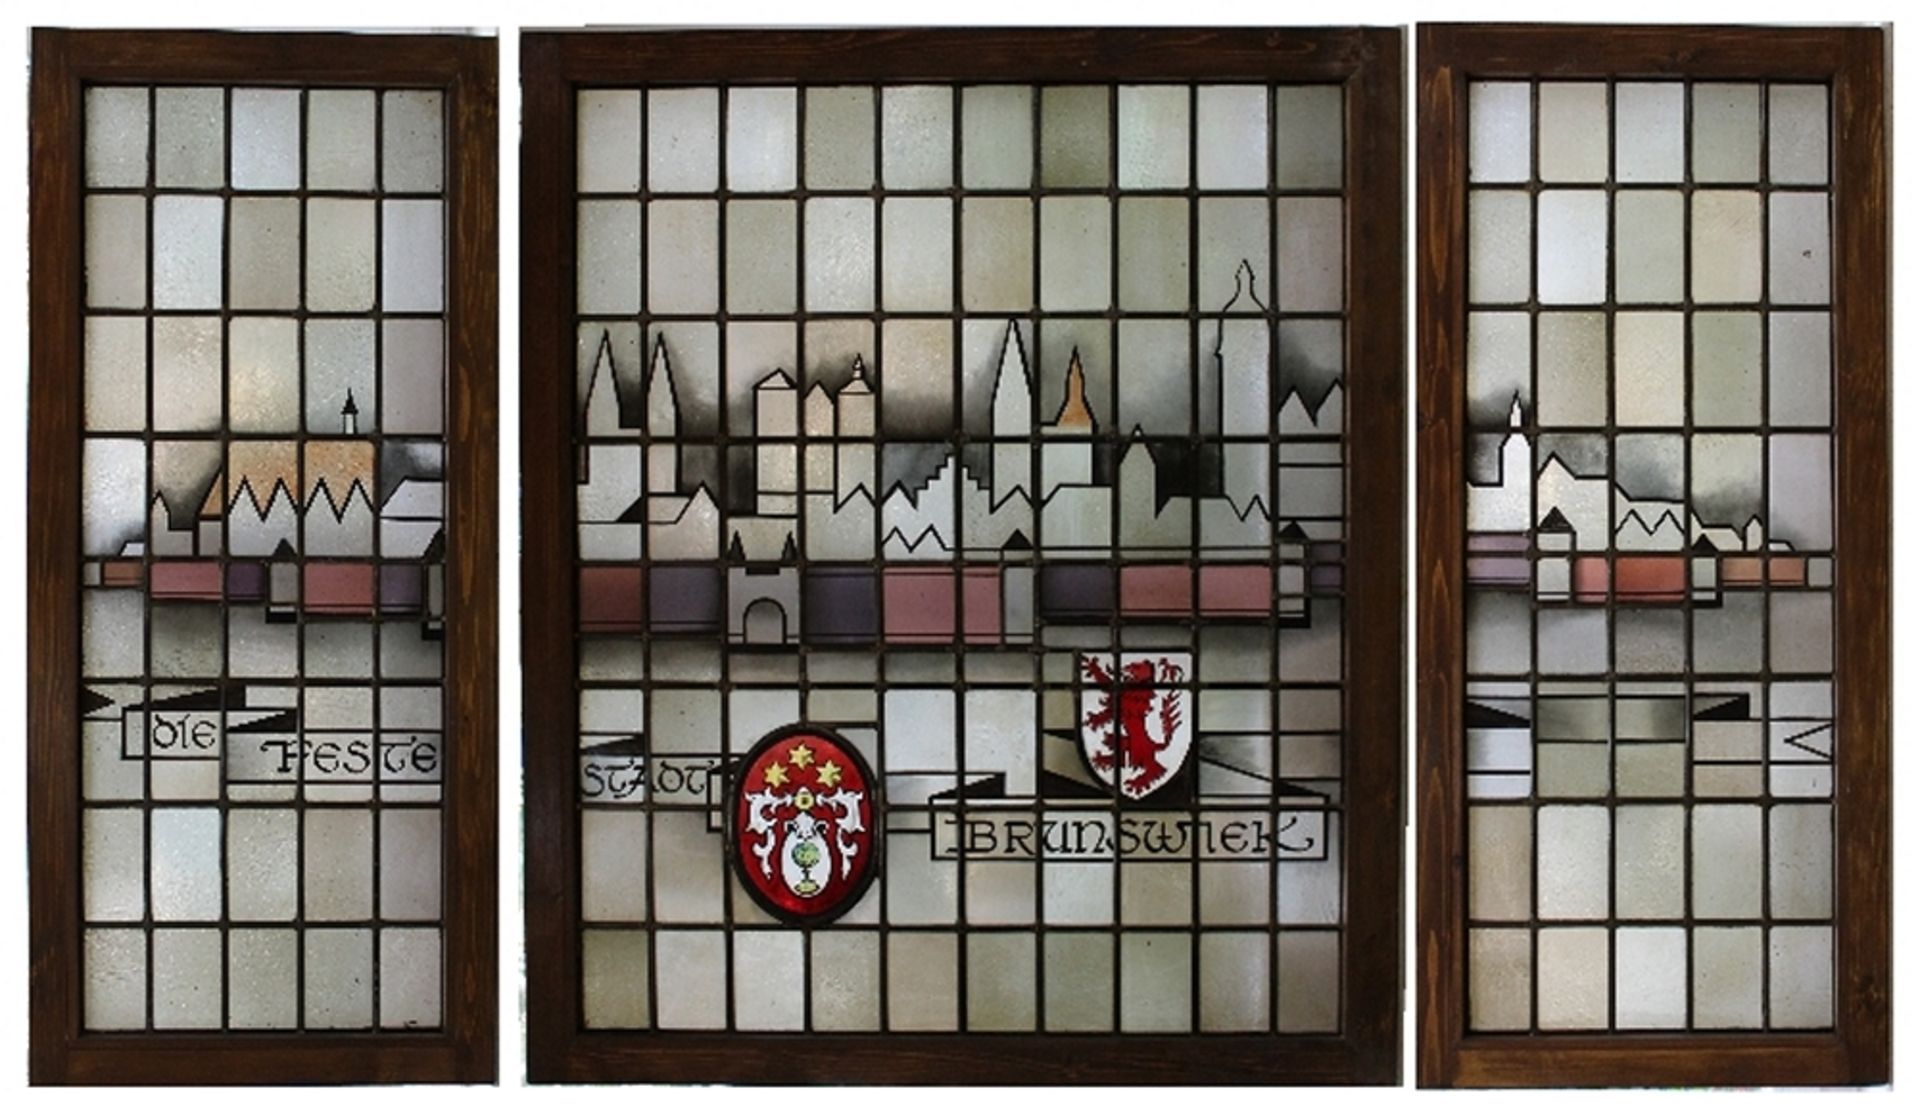 Braunschweig. Stadtsilhouette als Hinterglasbild / Bleiverglasung. Das mattfarbige Hinterglasbild